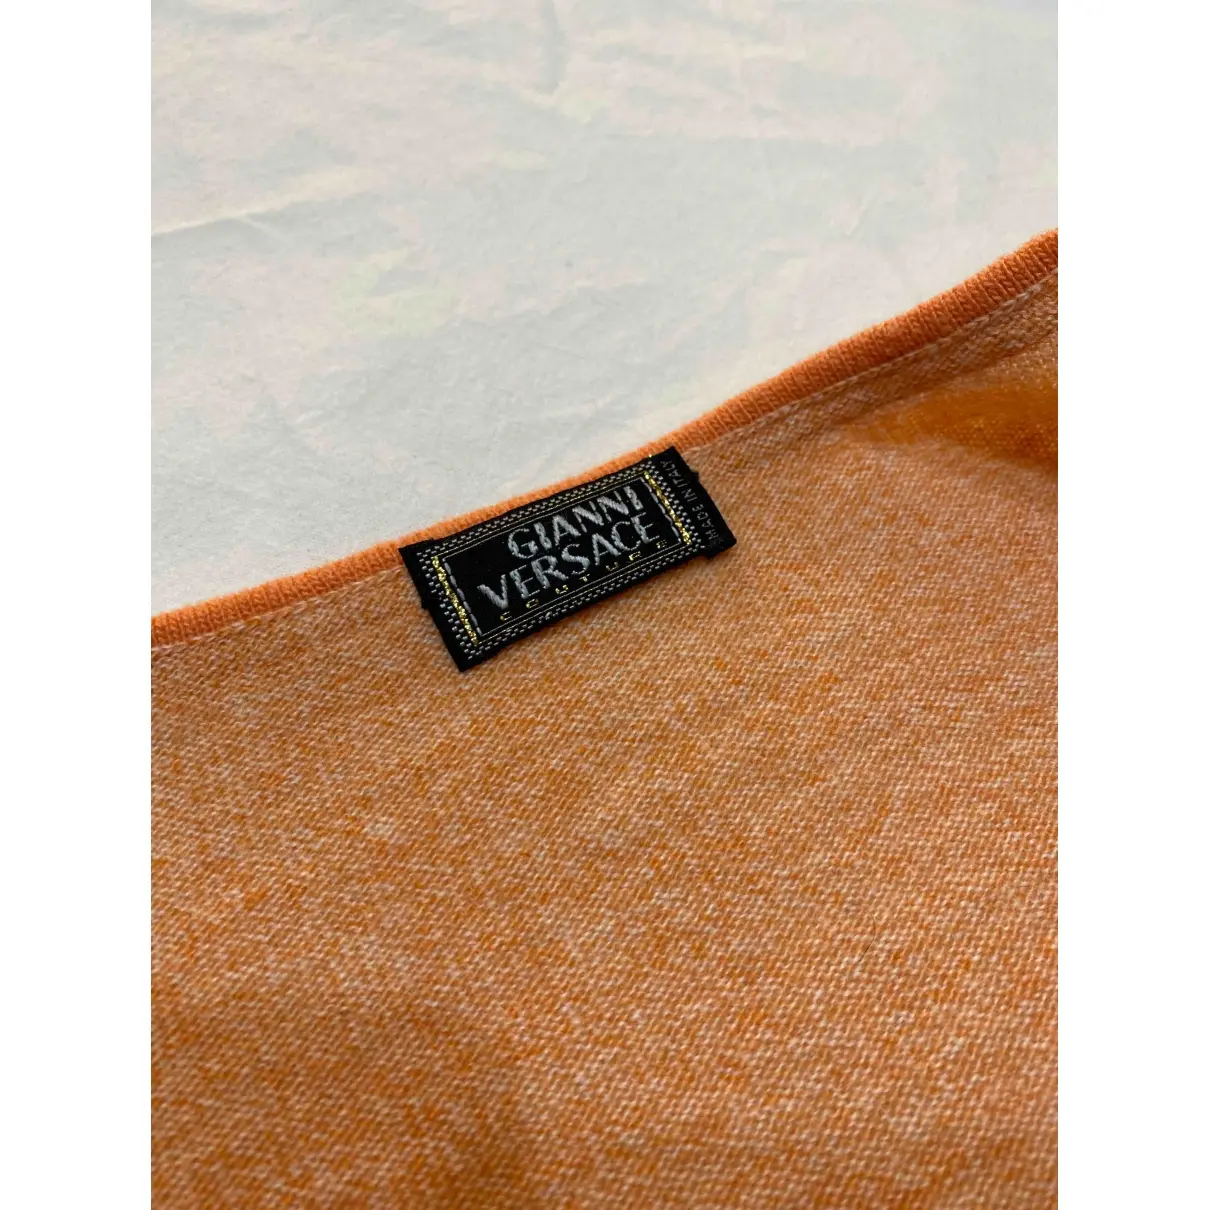 Buy Gianni Versace Cashmere jumper online - Vintage